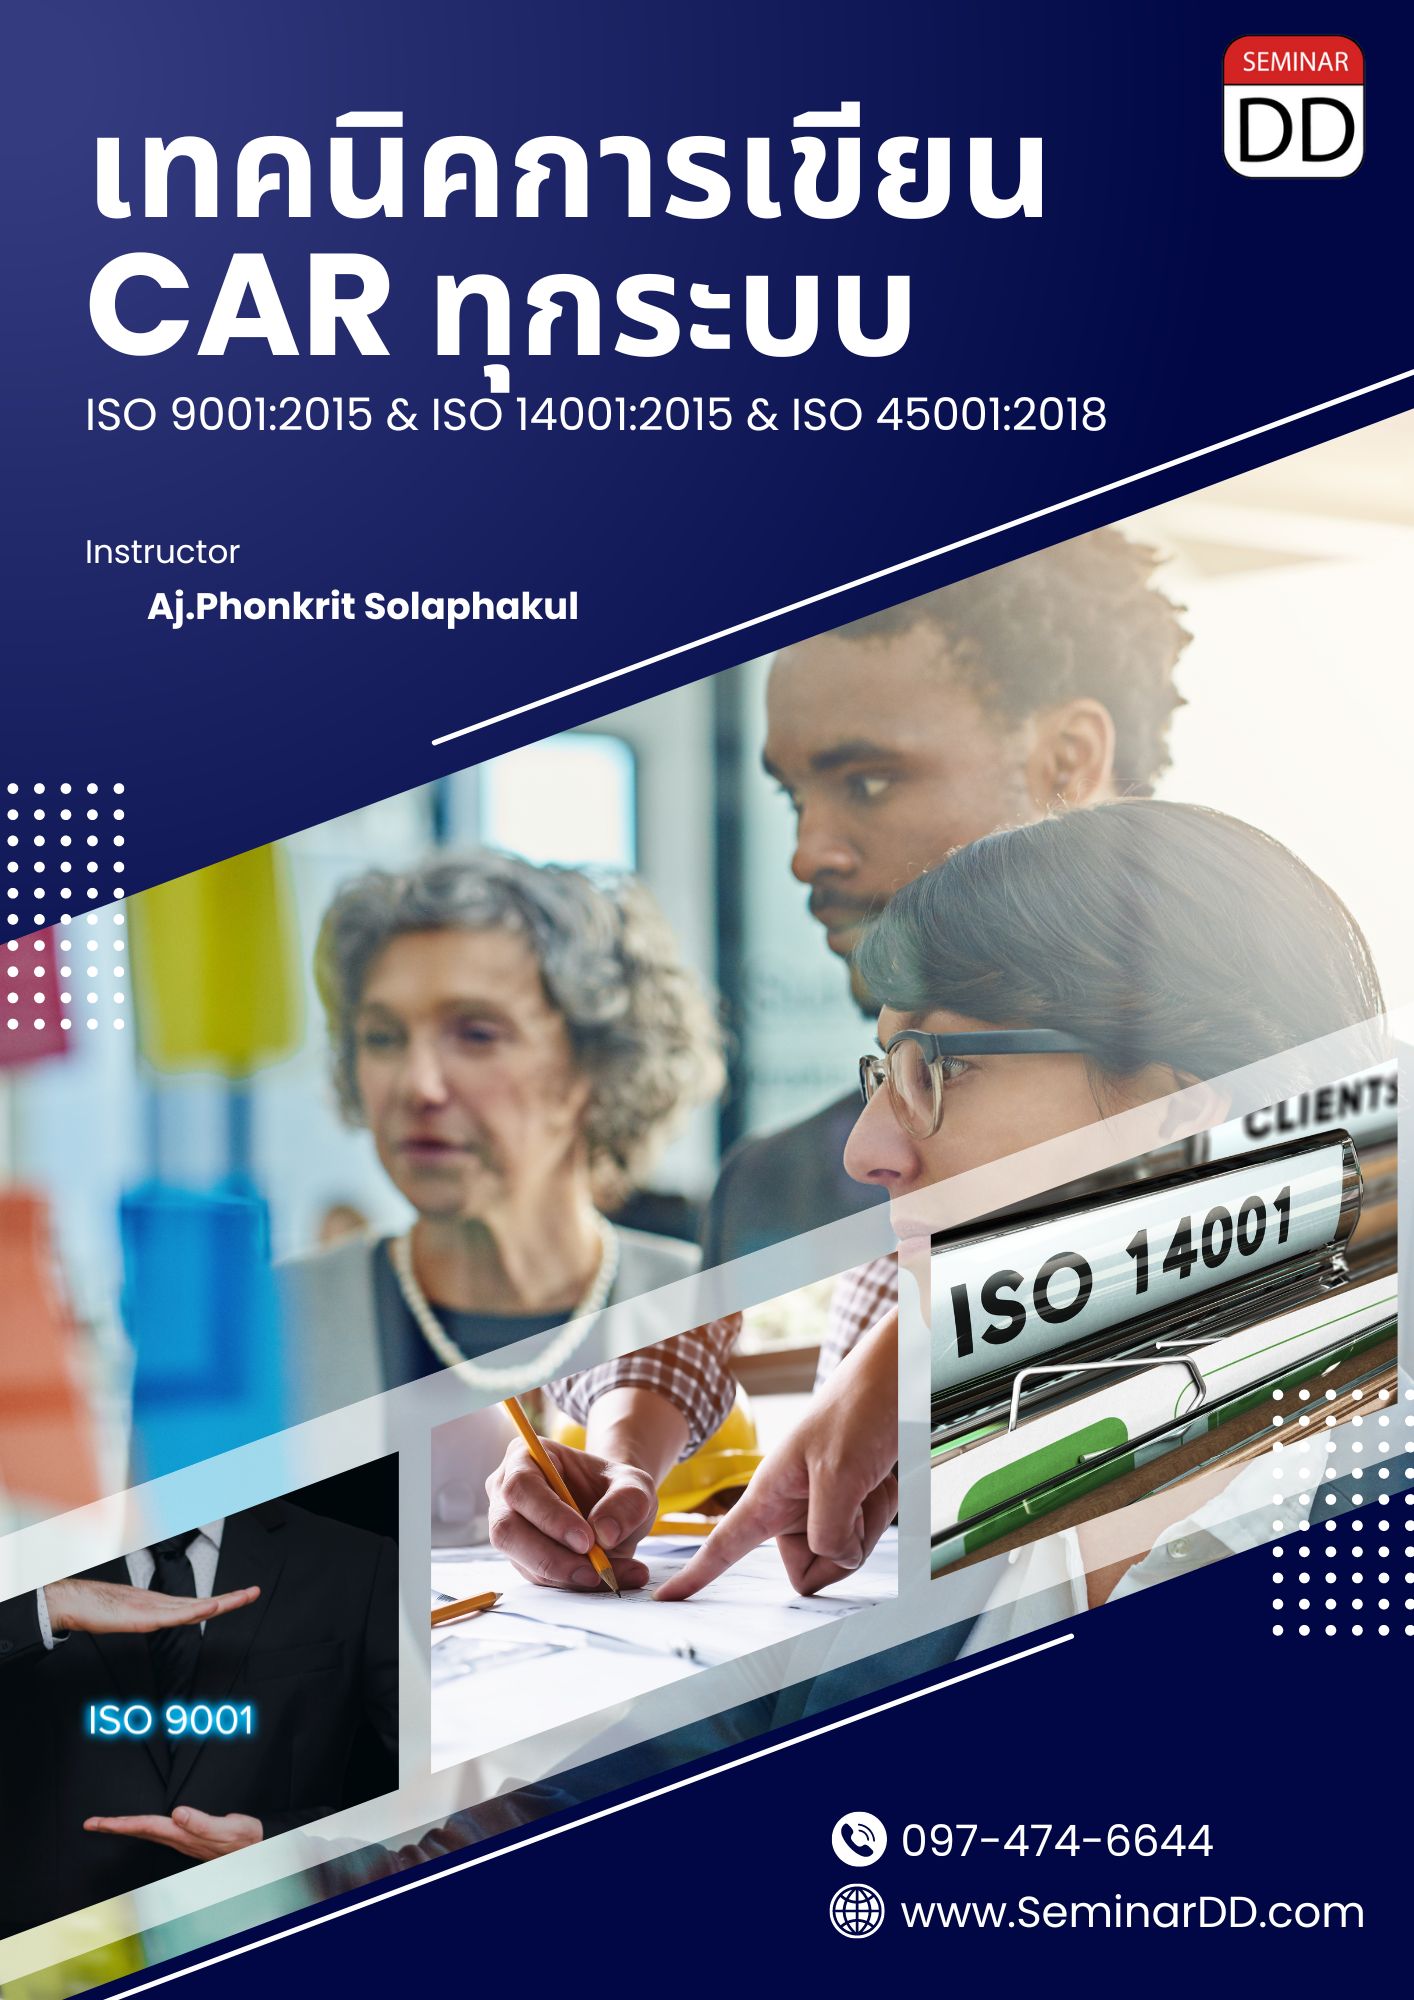 หลักสูตรอบรม เทคนิคการเขียน CAR ทุกระบบ (ISO 9001:2015,ISO 14001:2015 & ISO 45001:2018)